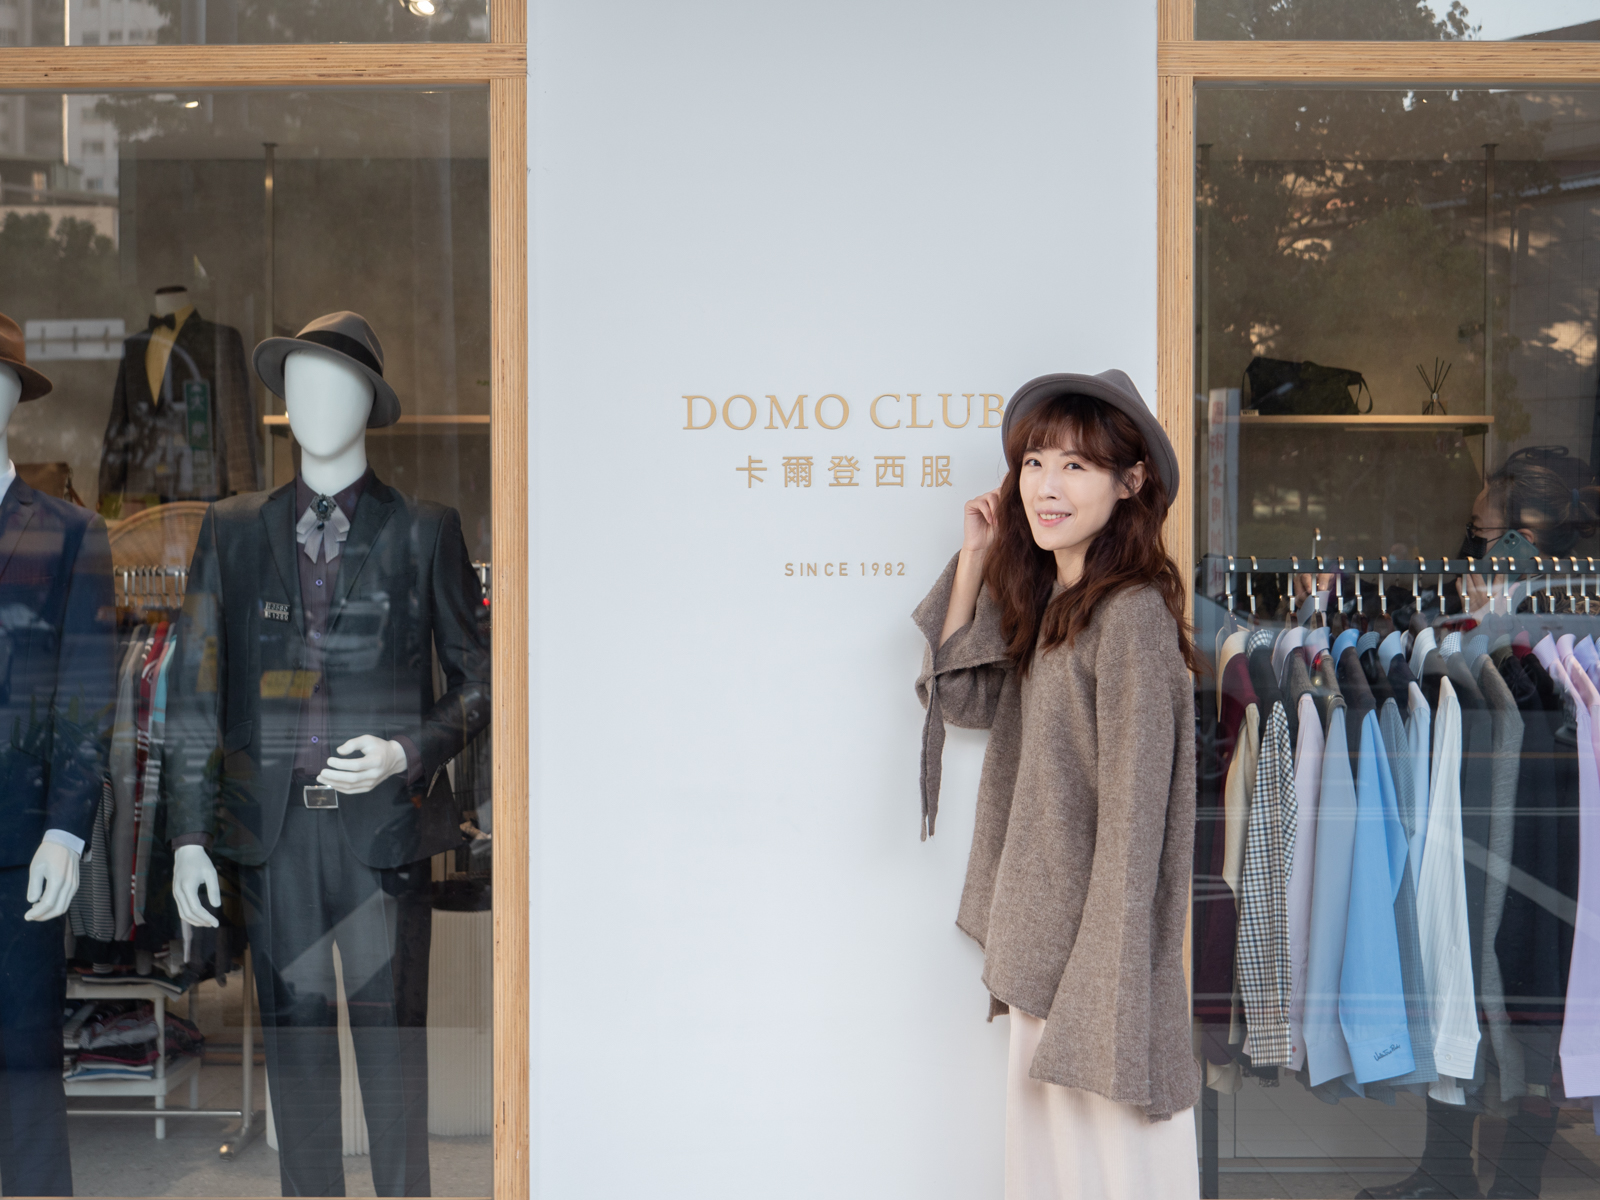 台中西裝推薦 卡爾登西服 Domo Club 適合各種身型 質感成套平價西裝